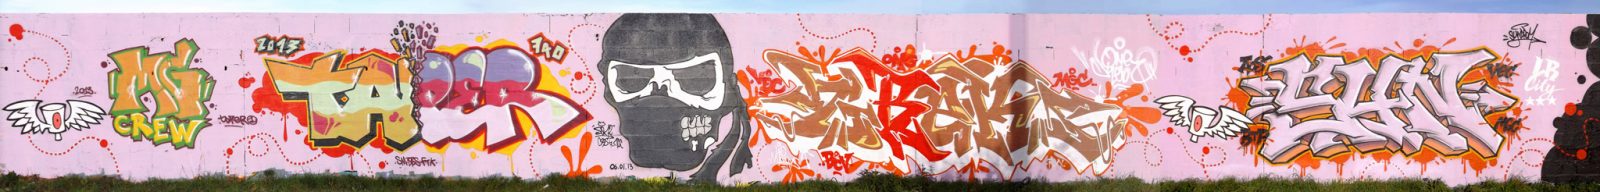 Graffiti à DBMA Aytré 2013